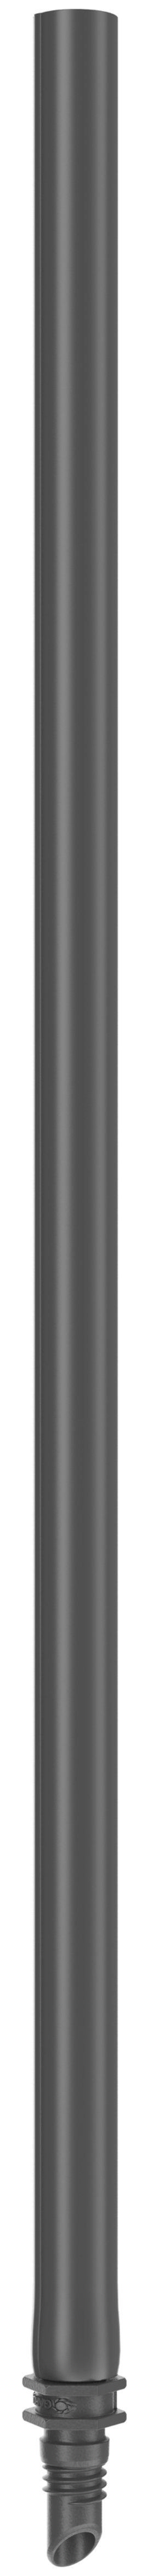 GARDENA Micro-Drip-System Verlängerungsrohr für Sprühdüse 5 Stk.